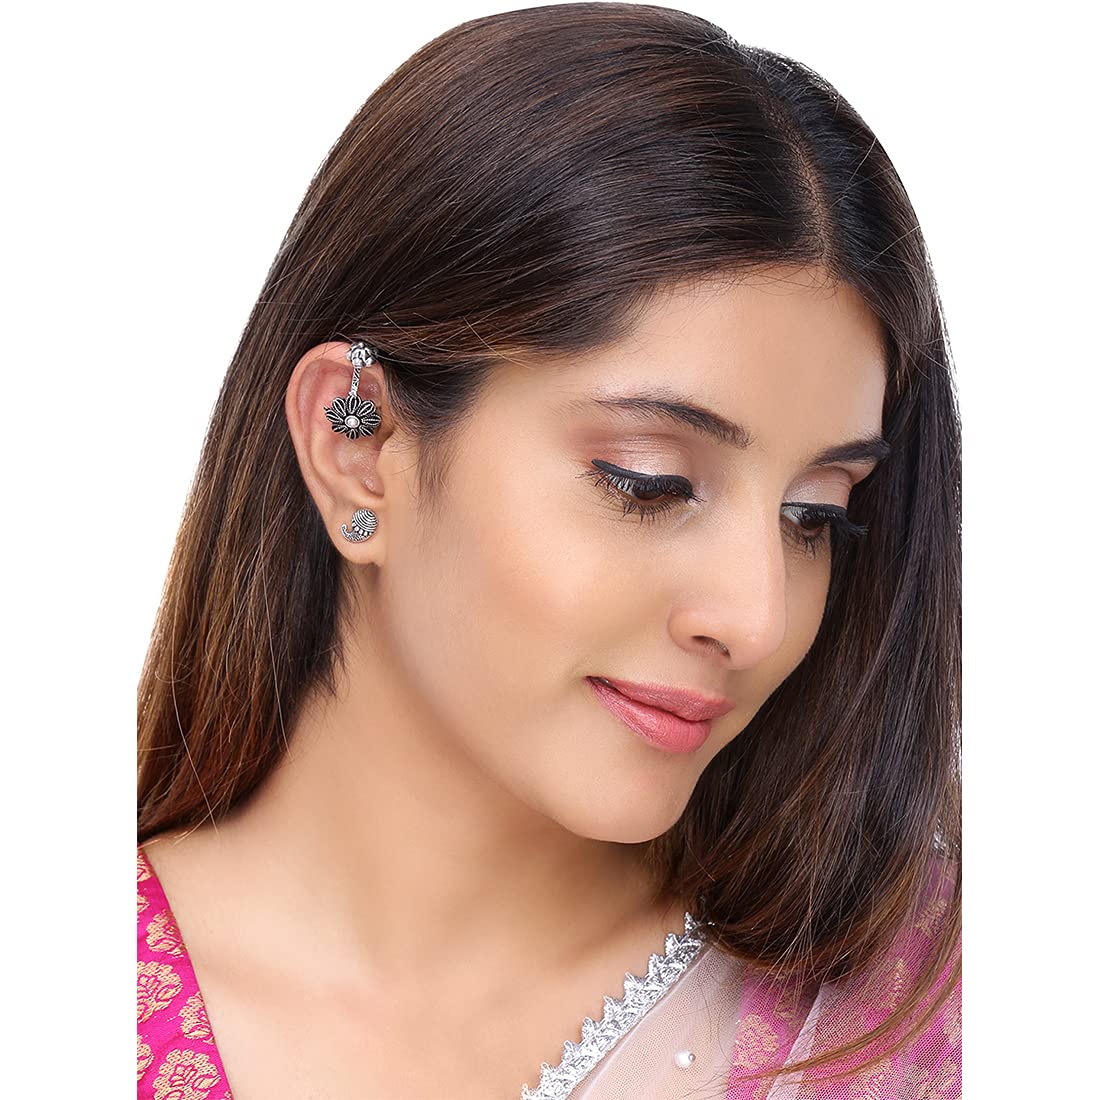 Silver Cuff Earrings for Women Ear Cuffs Earrings With 